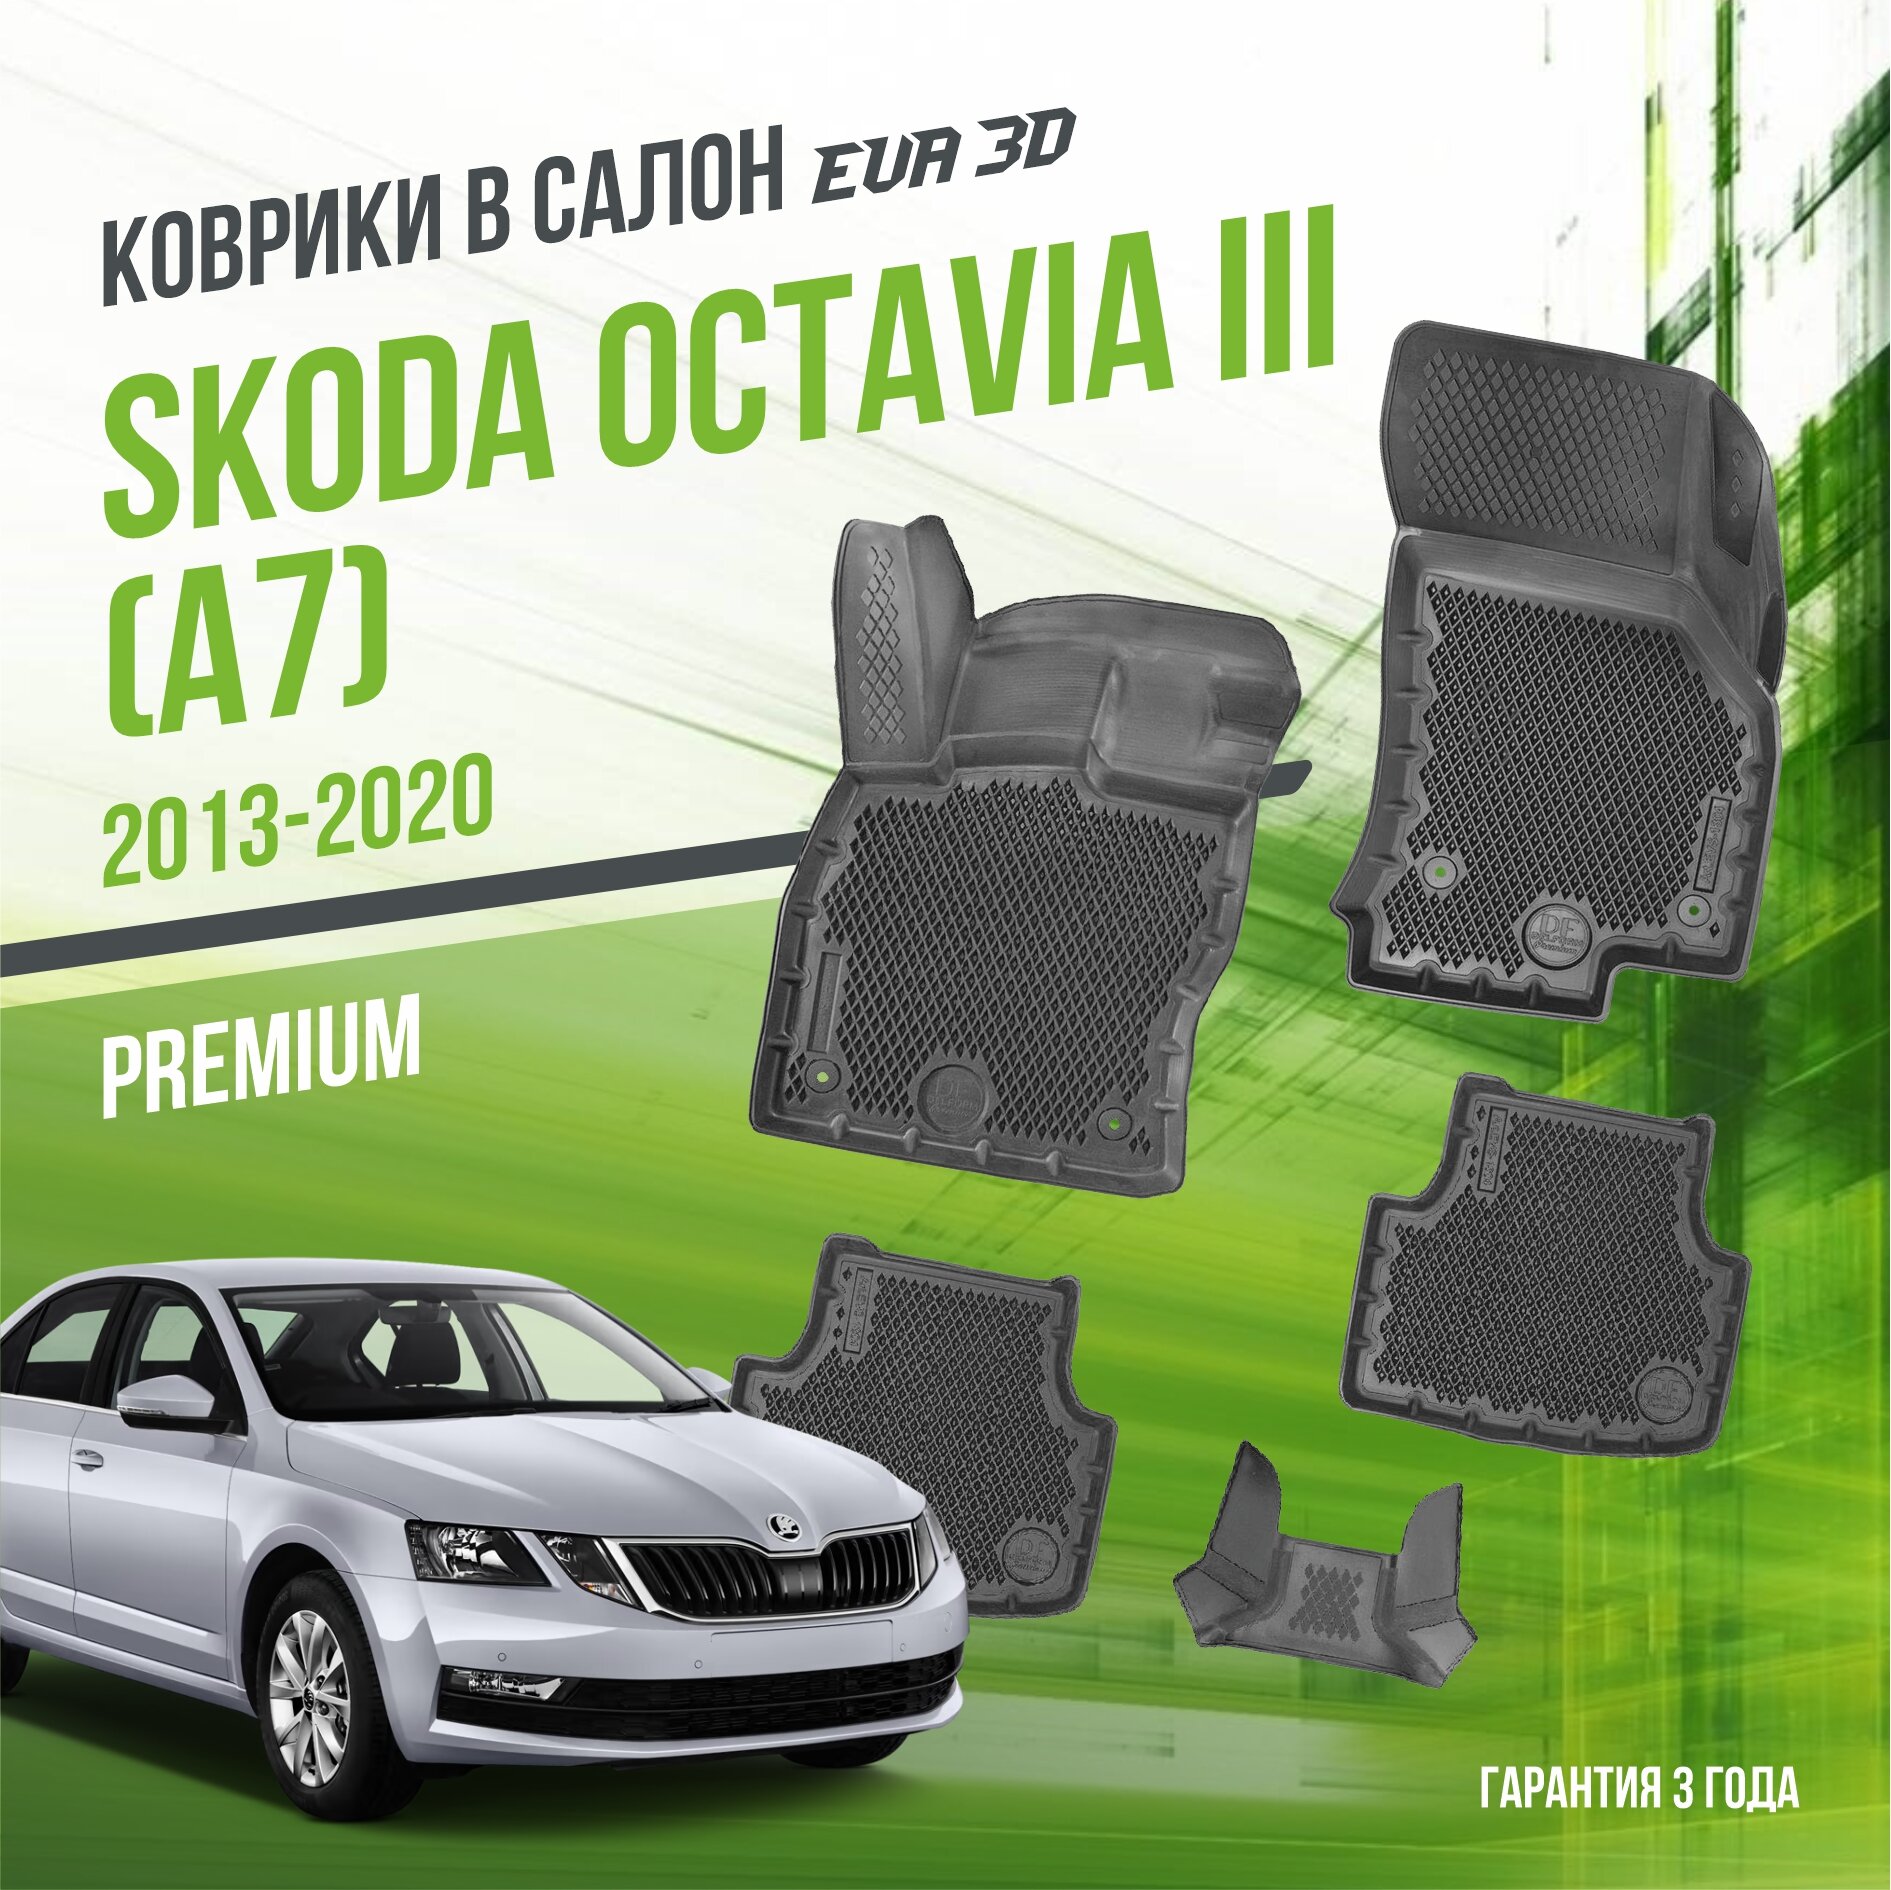 Коврики в салон Skoda Octavia III "A7" (2013-2020) / Шкода Октавиа 3 / набор "Premium" ковров DelForm с бортами и ячейками EVA 3D / ЭВА 3Д